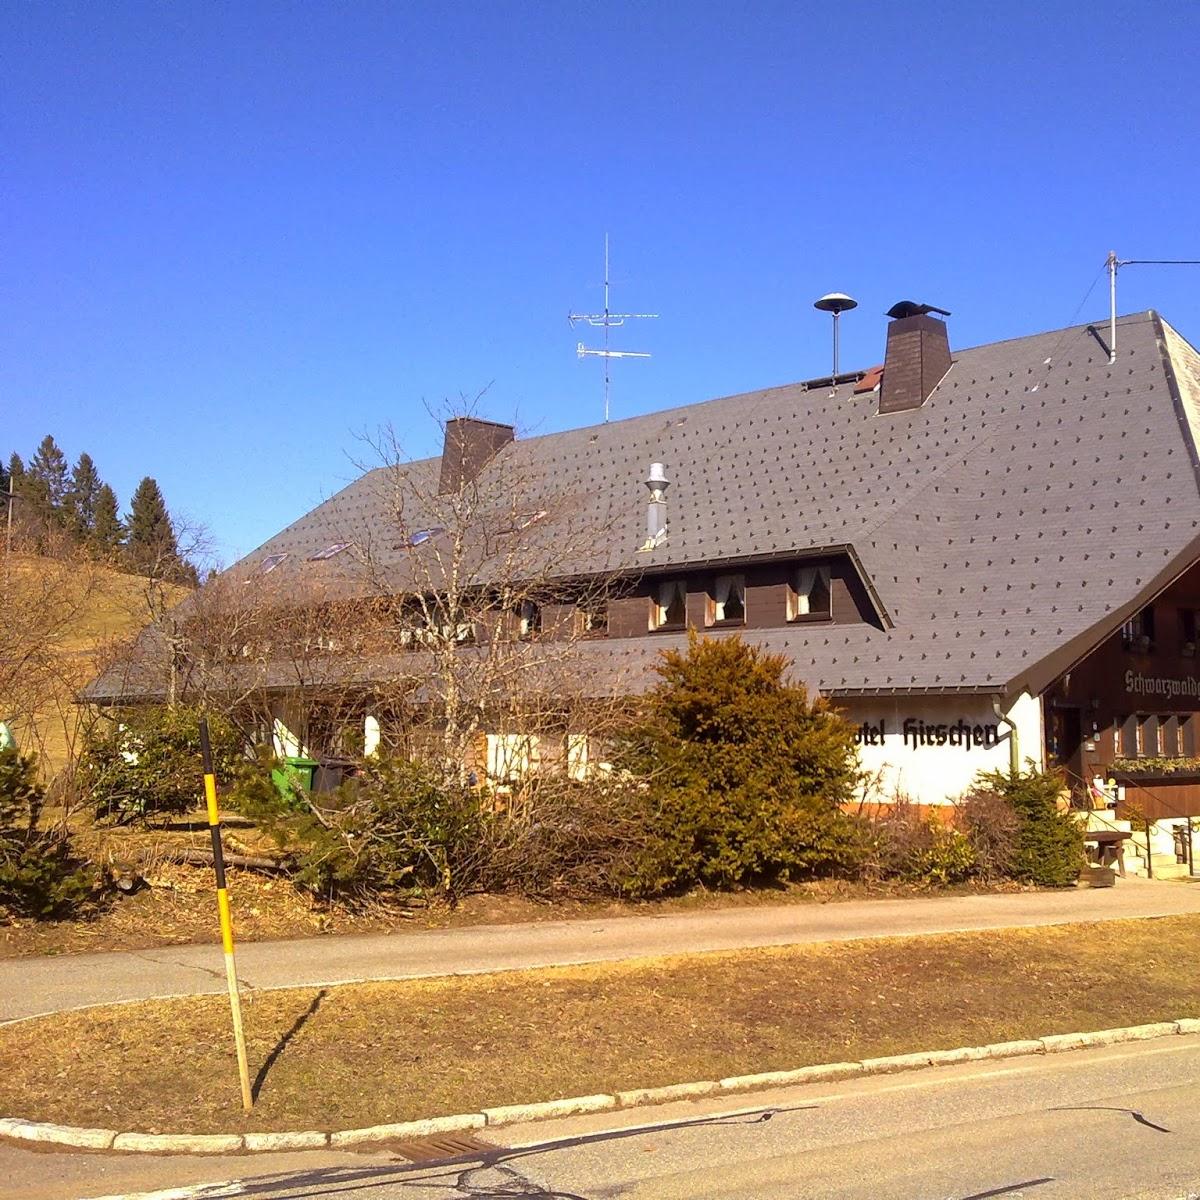 Restaurant "Hotel Hirschen" in  Ibach